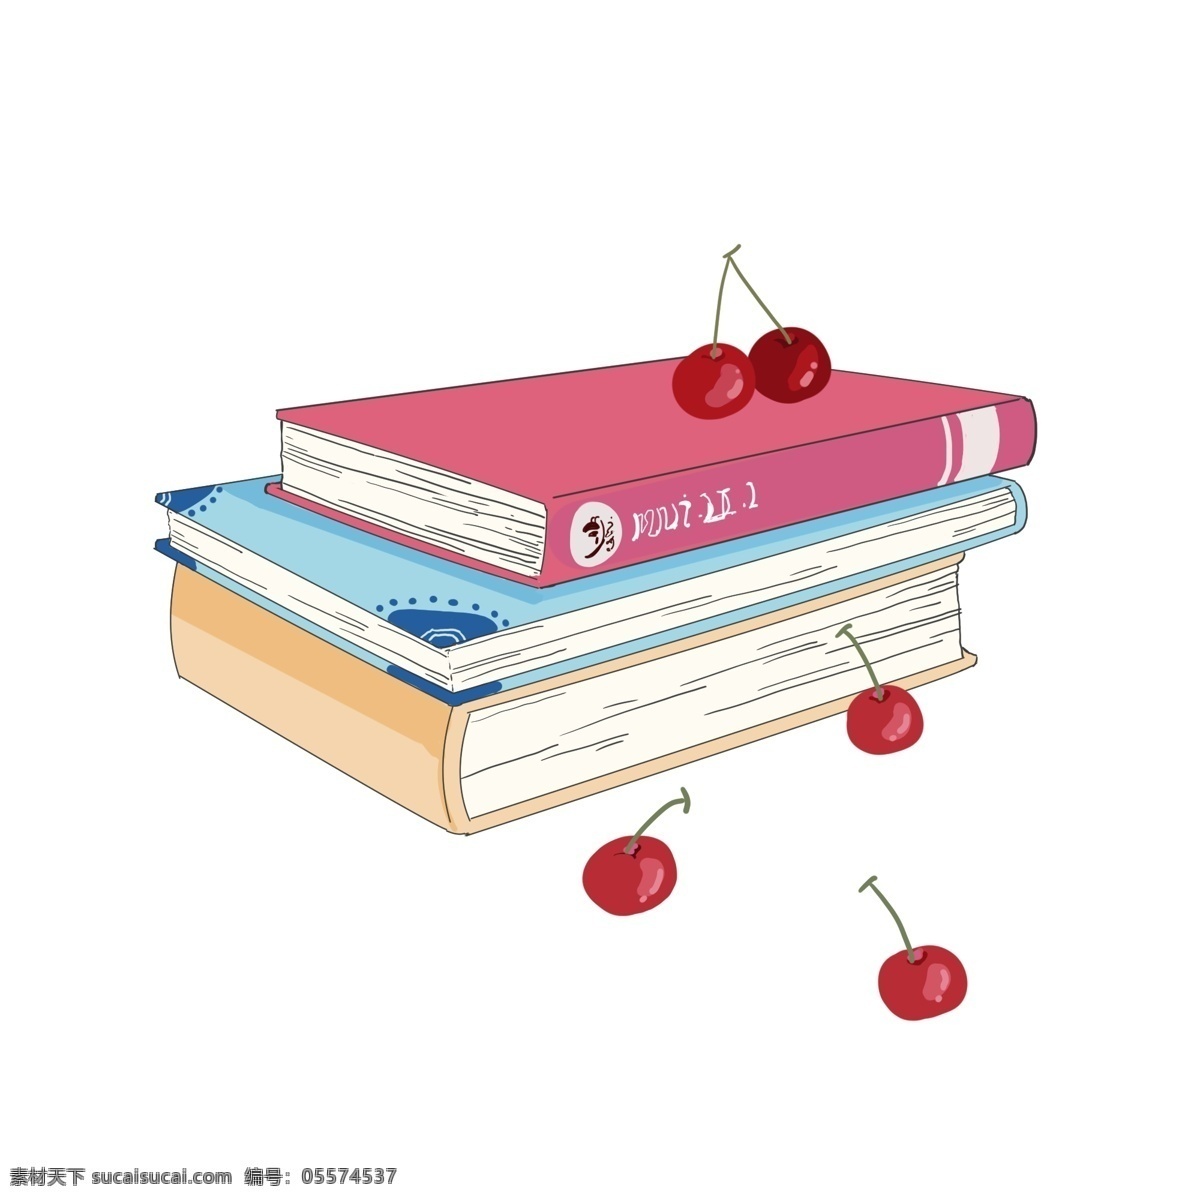 彩色 书籍 樱桃 彩色的书籍 漂亮的书籍 创意书籍 红色的樱桃 新鲜的樱桃 学习书籍 图书馆书籍